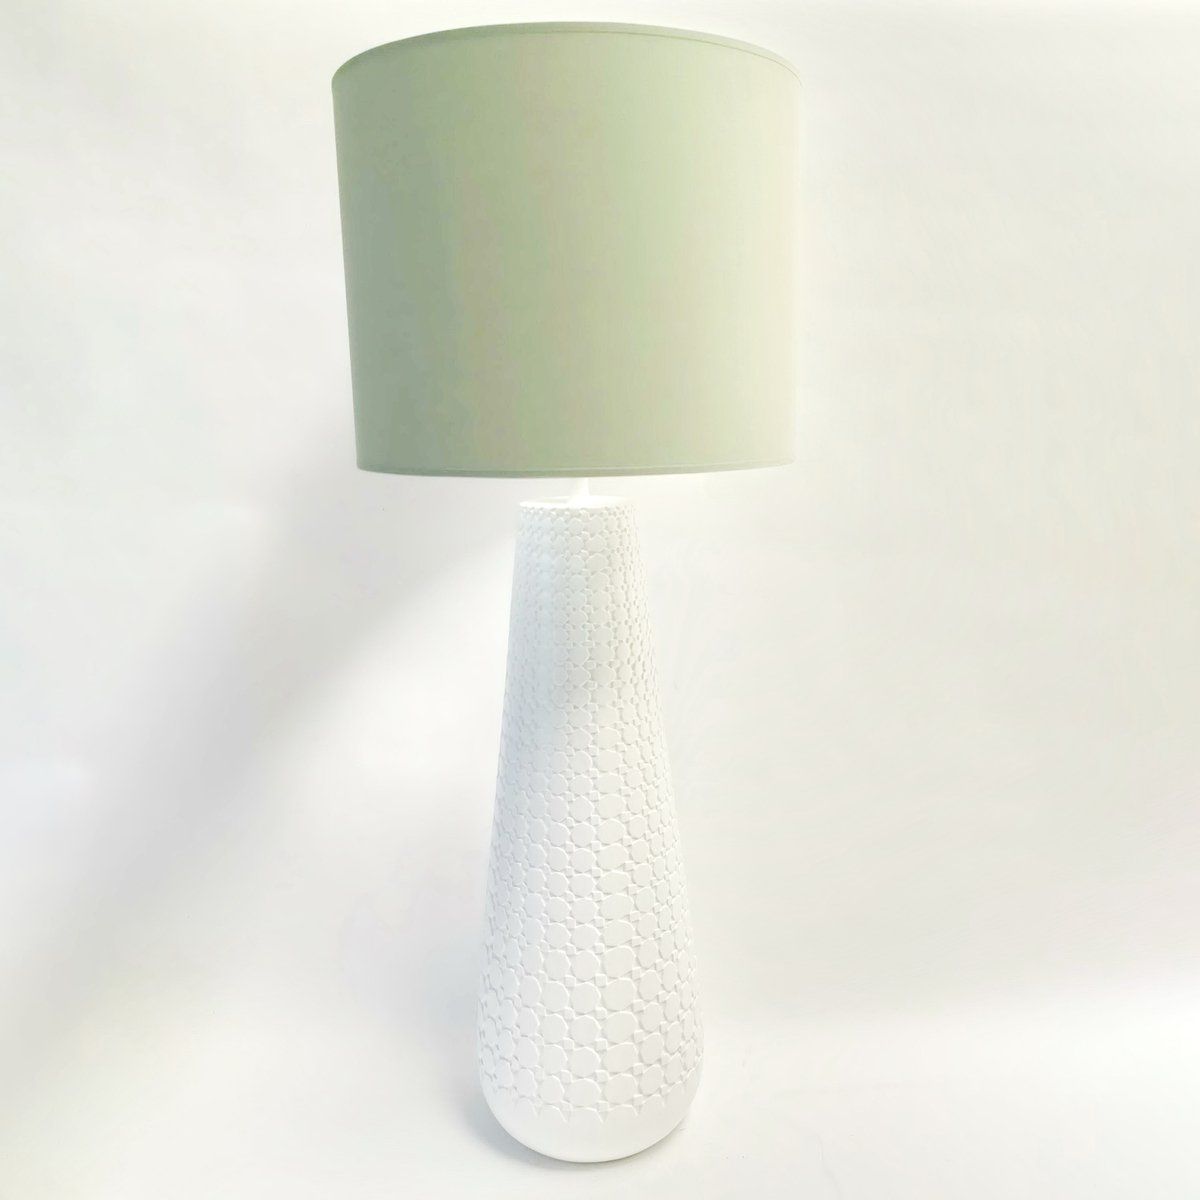 Lampe à poser URBAN (H61cm) en céramique blanc abat-jour en tissu vert